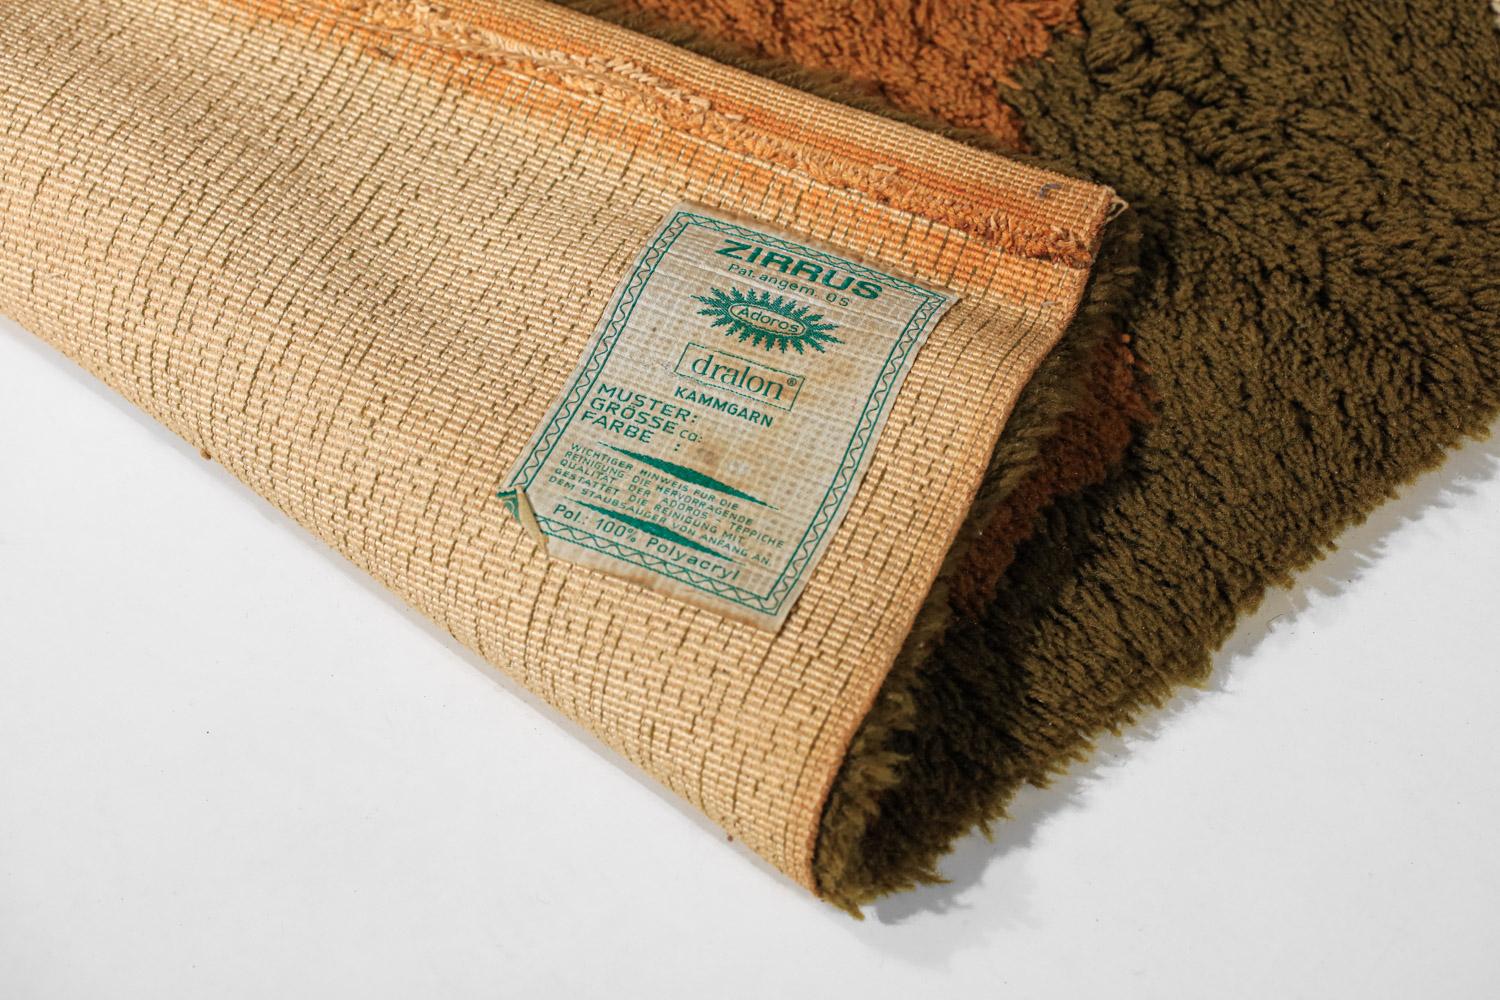 Großer Teppich aus den 70er/80er Jahren von dem deutschen Hersteller Zirrus Adoros im Stil der skandinavischen Teppiche dieser Zeit. Polyacryl-Teppich in Braun-, Khaki- und Beigetönen mit einem abstrakten, aber sehr ansprechenden Muster. Sehr